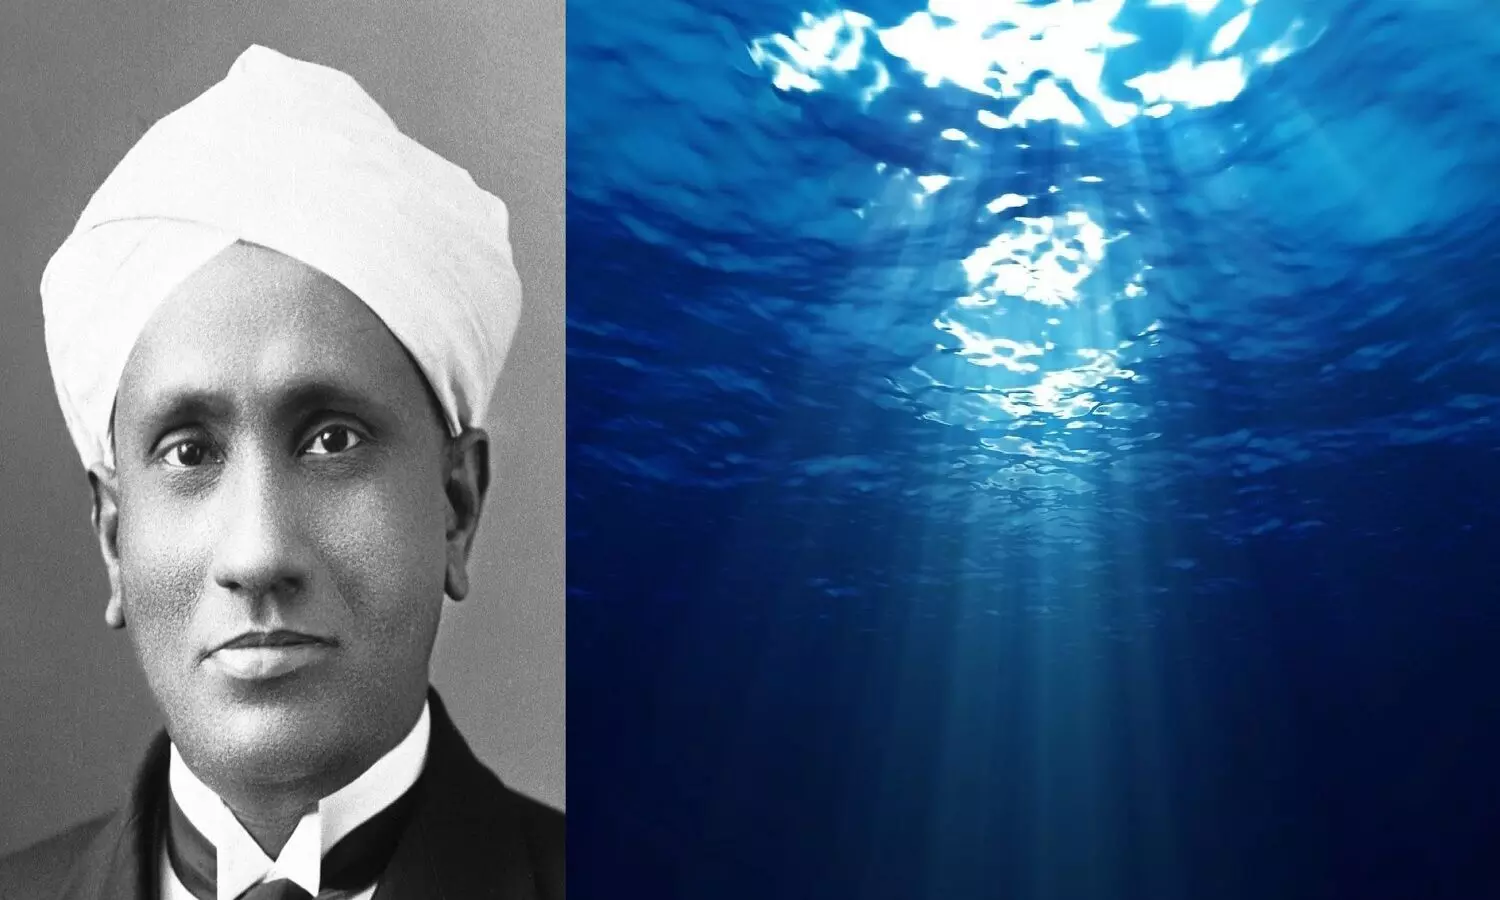 समुद्र का पानी नीला क्यों होता है, इसकी खोज महान वैज्ञानिक CV Raman ने की थी, रमन प्रभाव क्या है